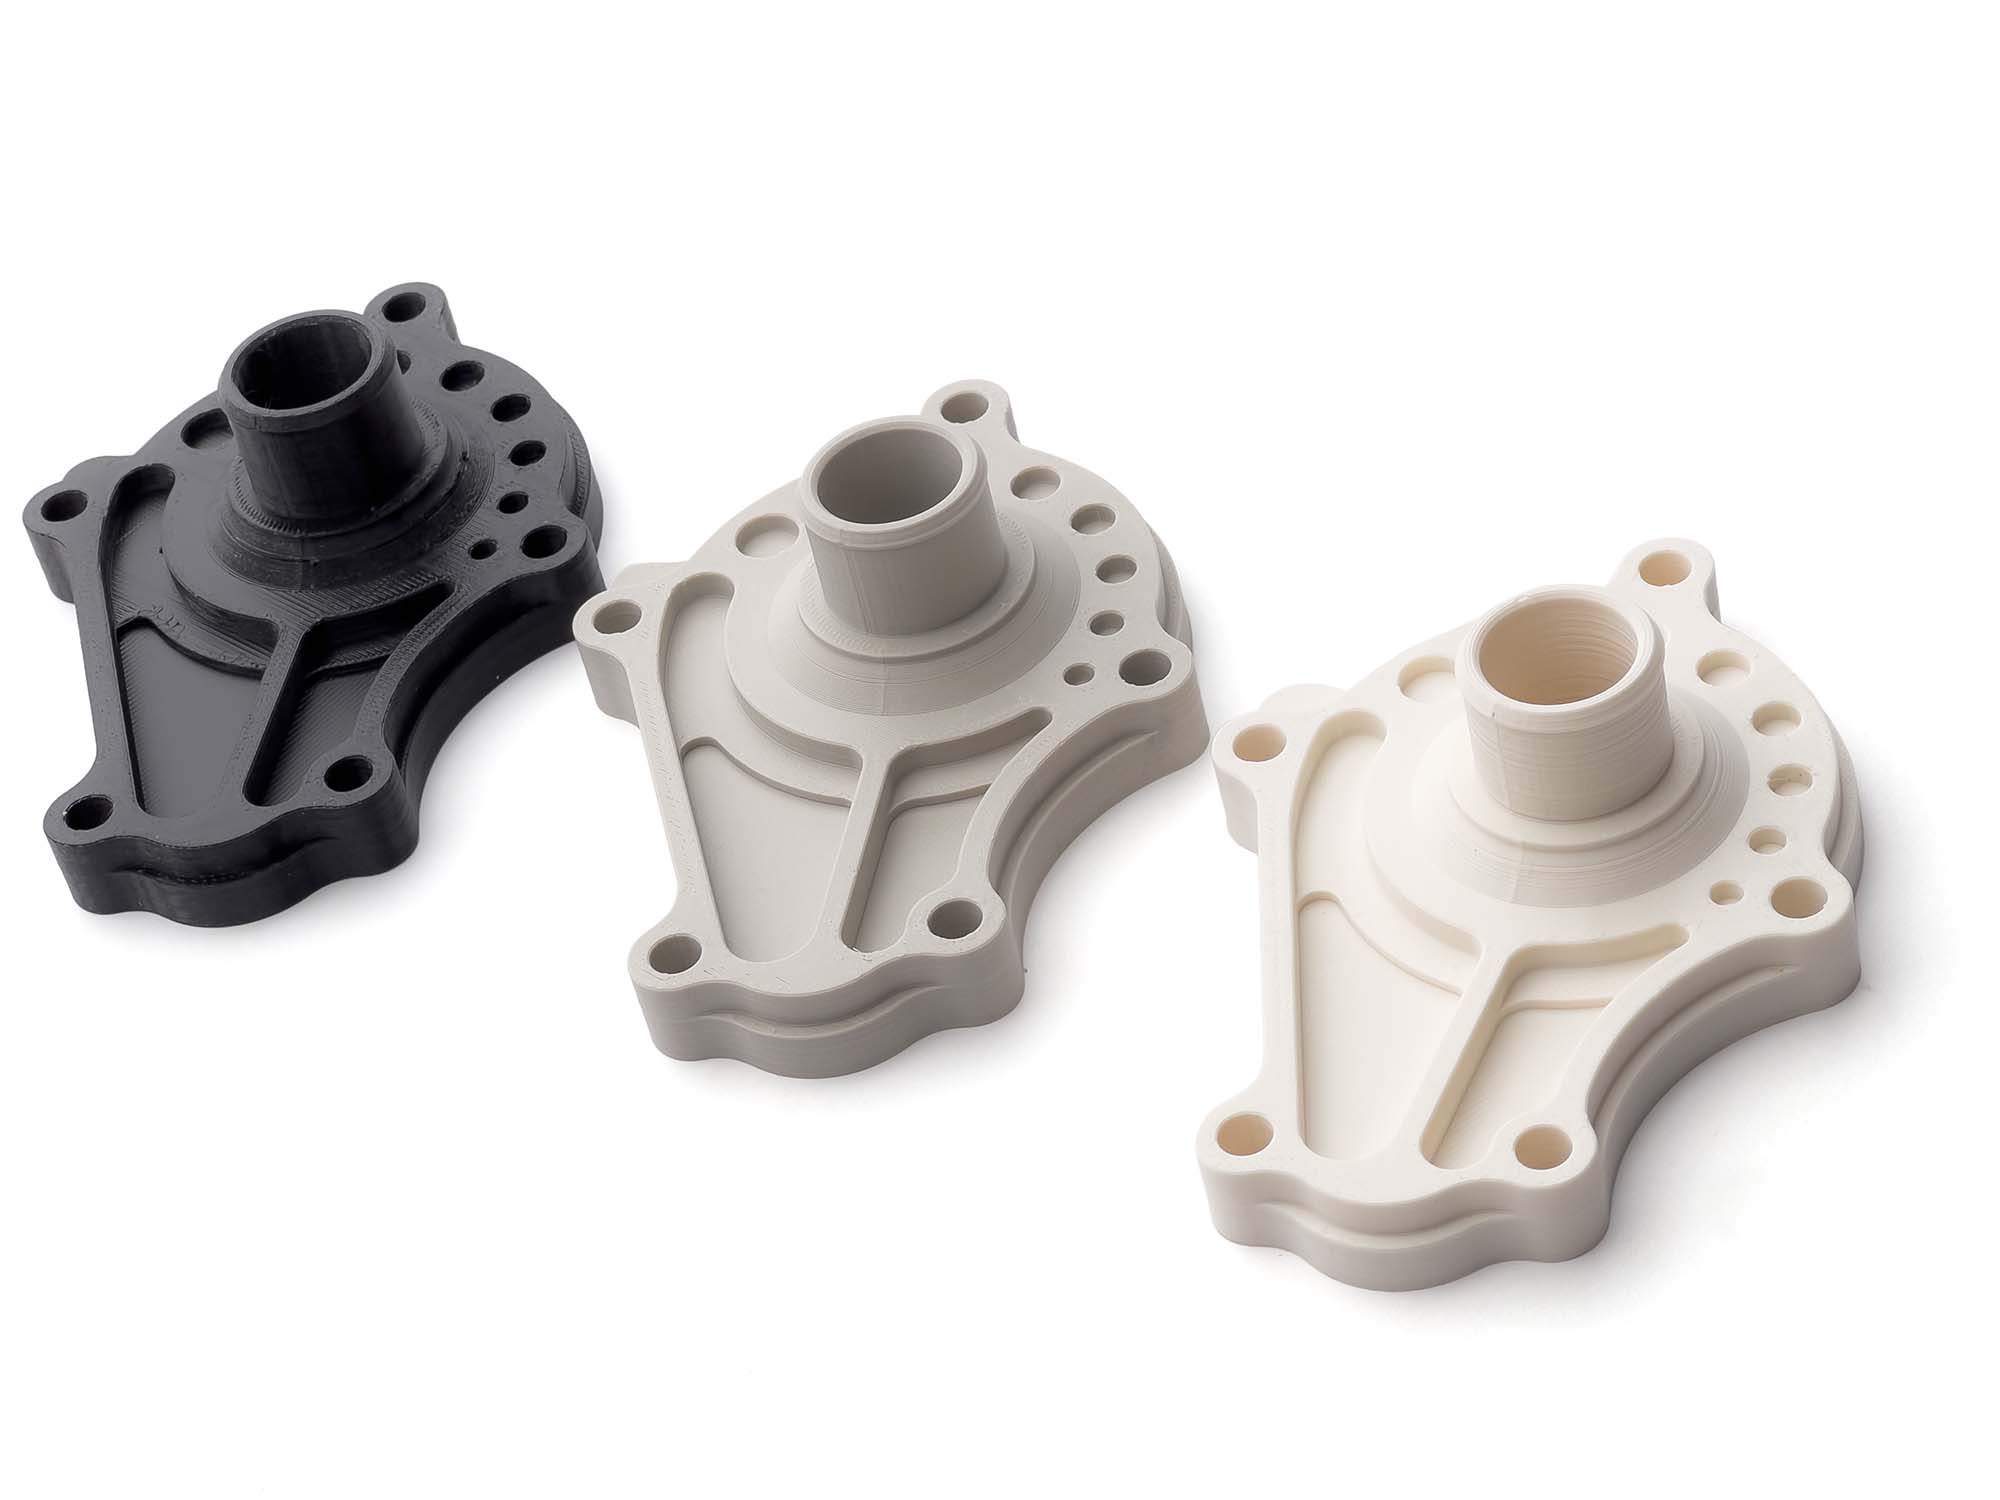 ASA 3D printed parts